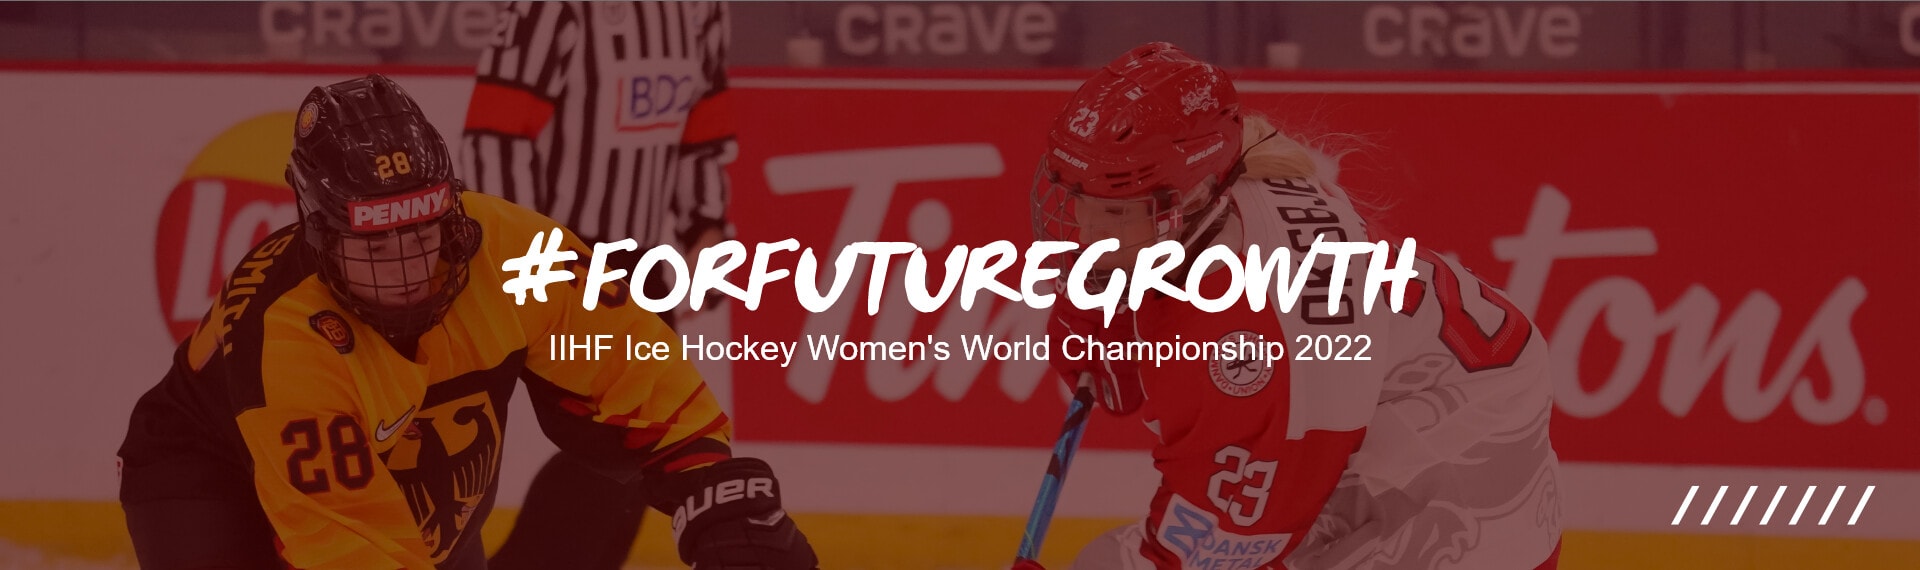 Bannerbillede for IIHF ishockey kvindelige verdensmesterskab 2022